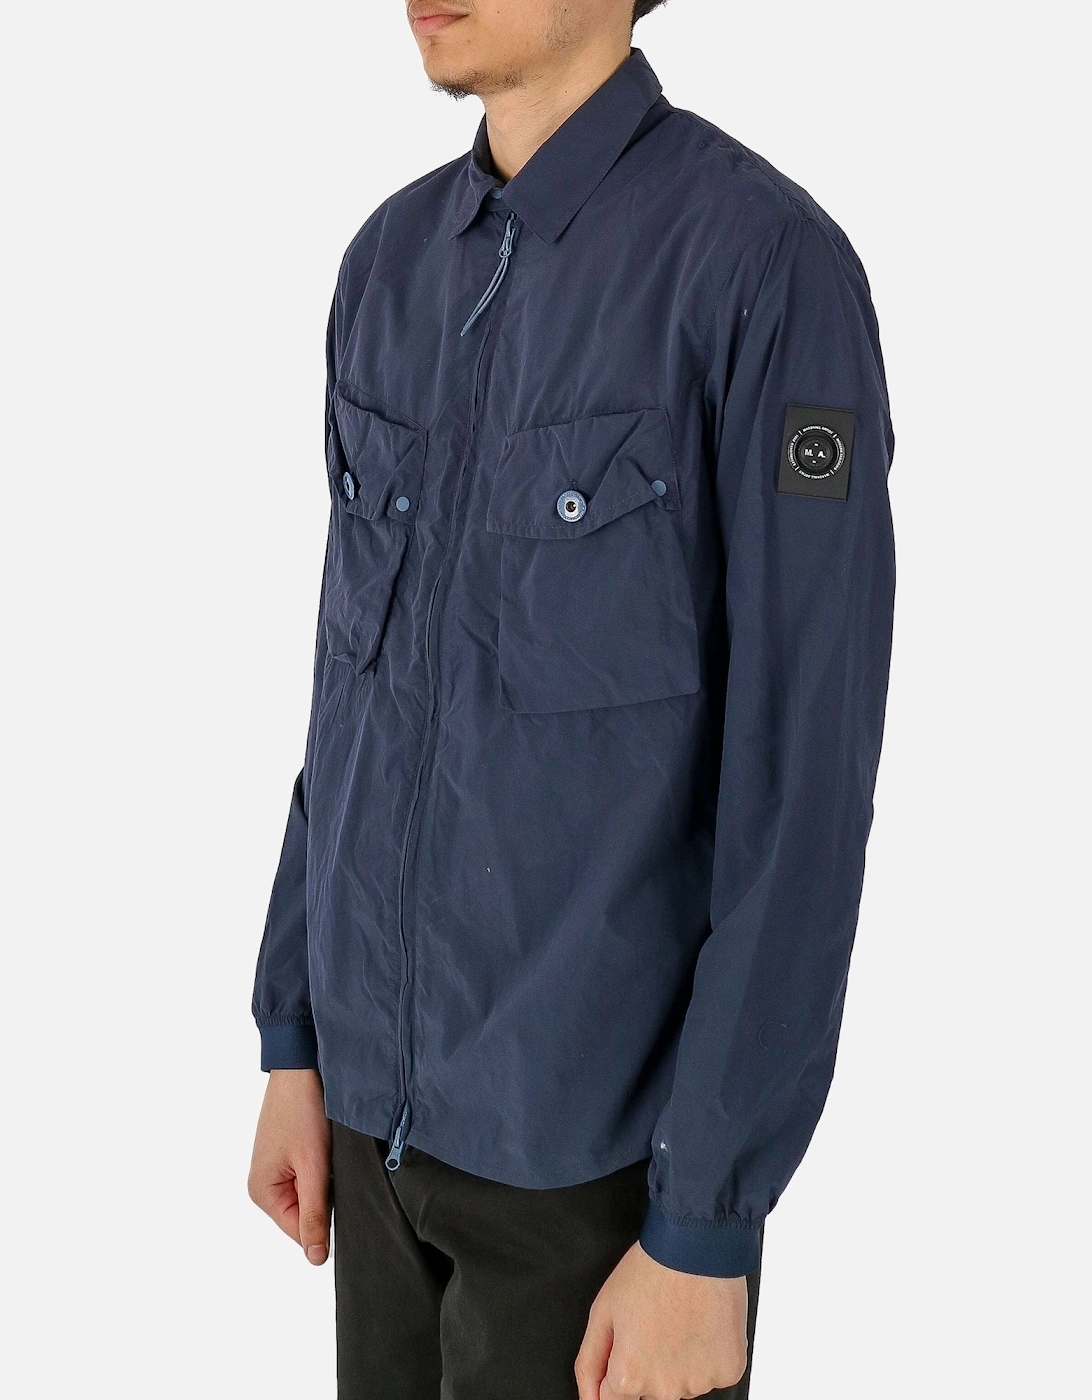 Tonaro Zip Navy Overshirt Jacket